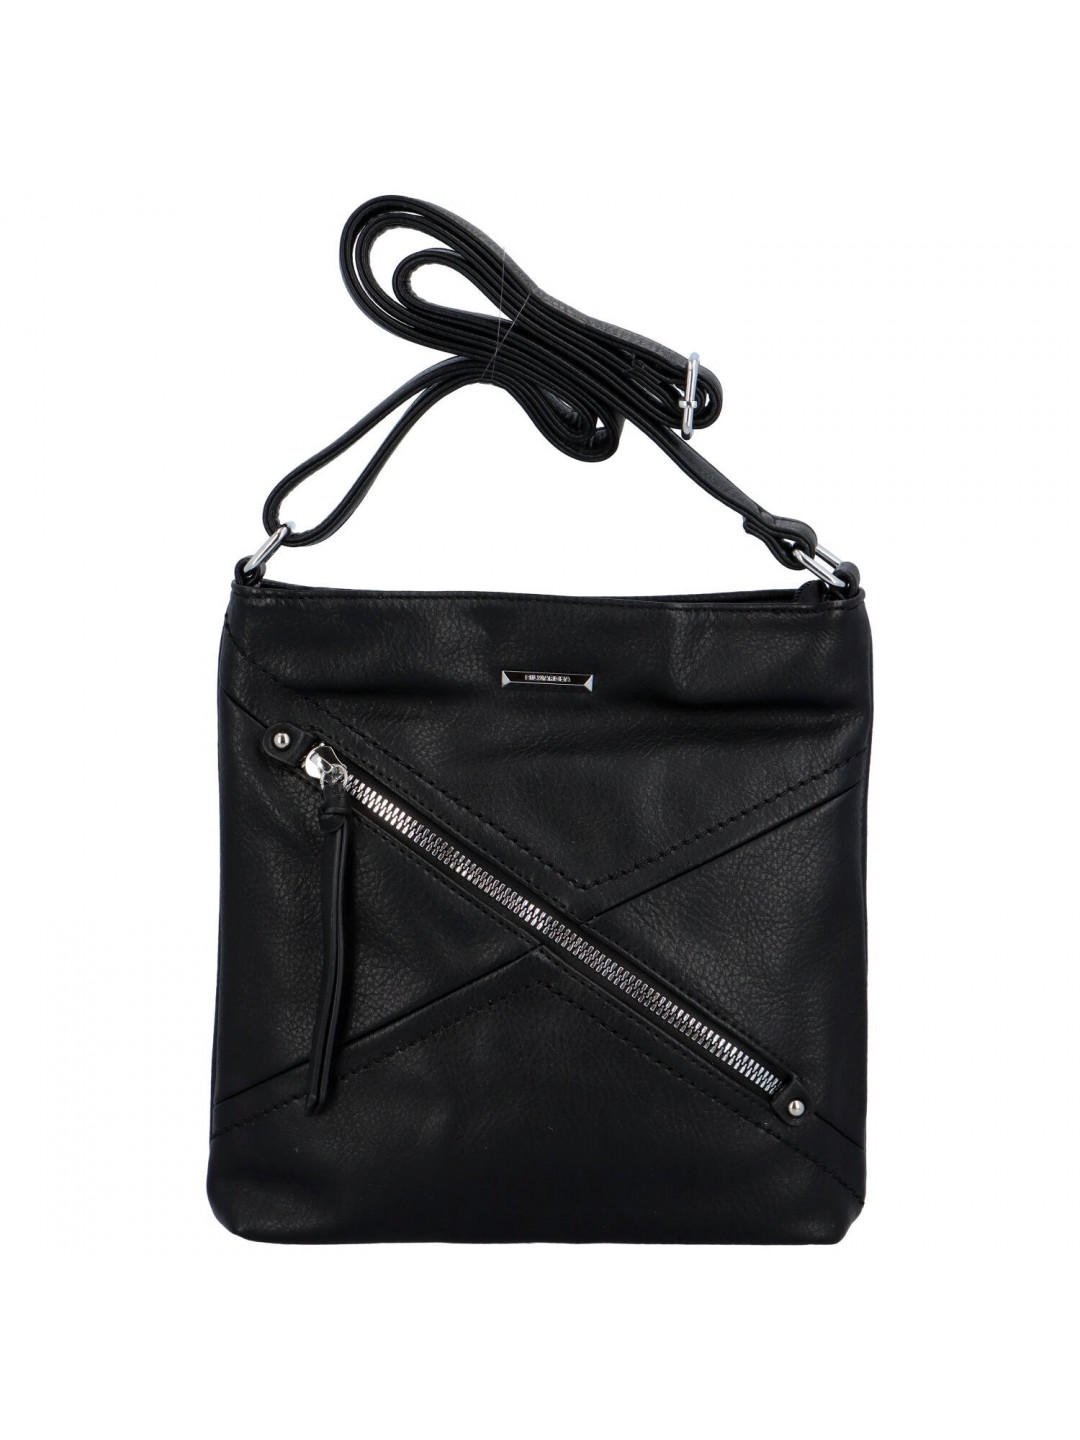 Dámská koženková crossbody kabelka s ozdobným zipem Amelia černá